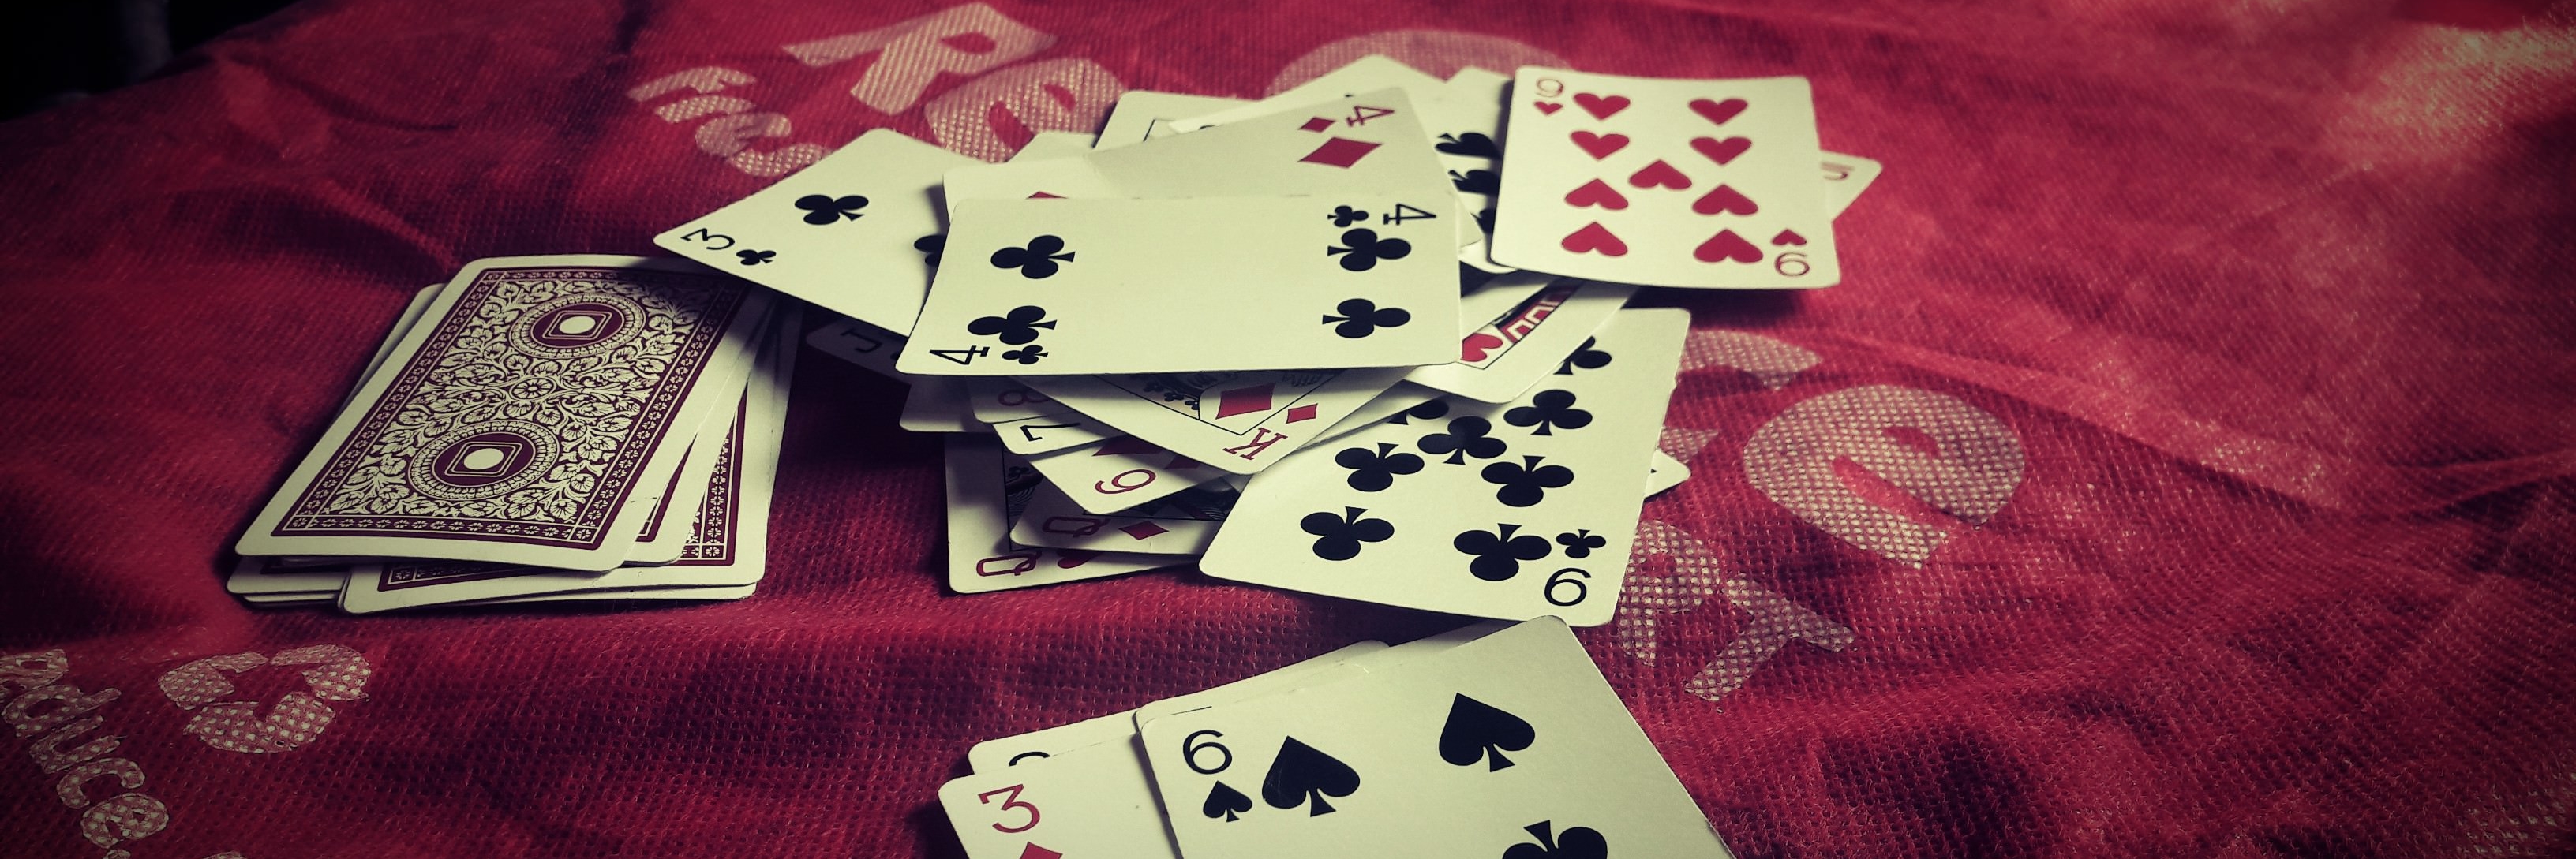 jeu de cartes à jouer